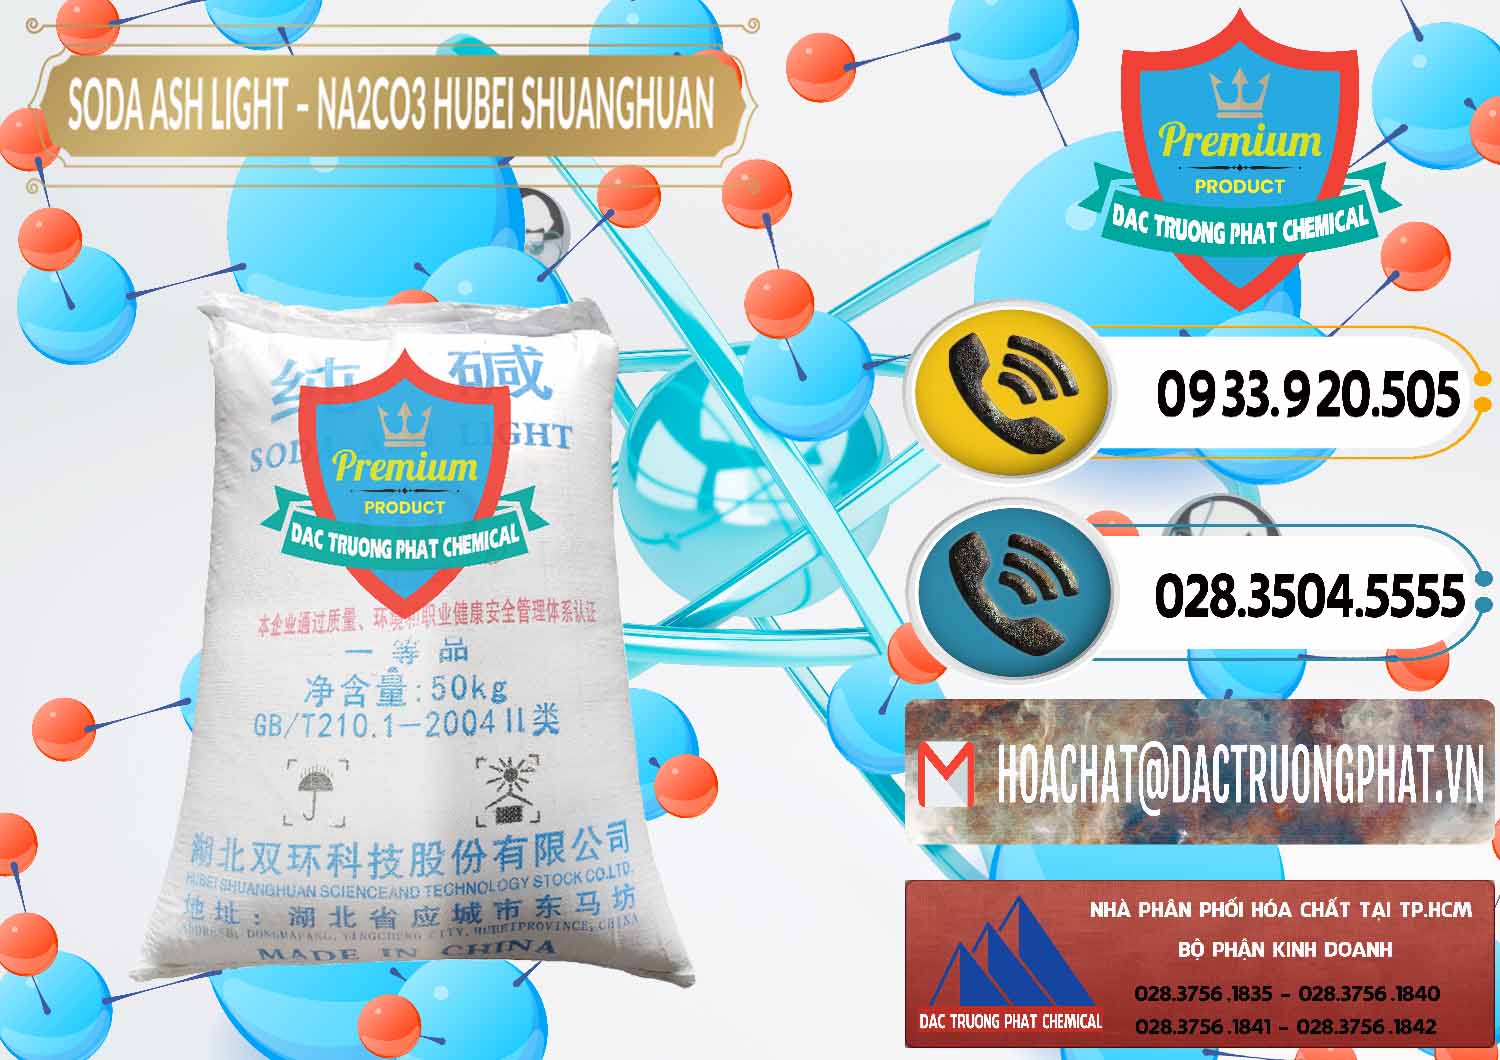 Cty bán _ phân phối Soda Ash Light - NA2CO3 2 Vòng Tròn Hubei Shuanghuan Trung Quốc China - 0130 - Nơi bán ( phân phối ) hóa chất tại TP.HCM - hoachatdetnhuom.vn